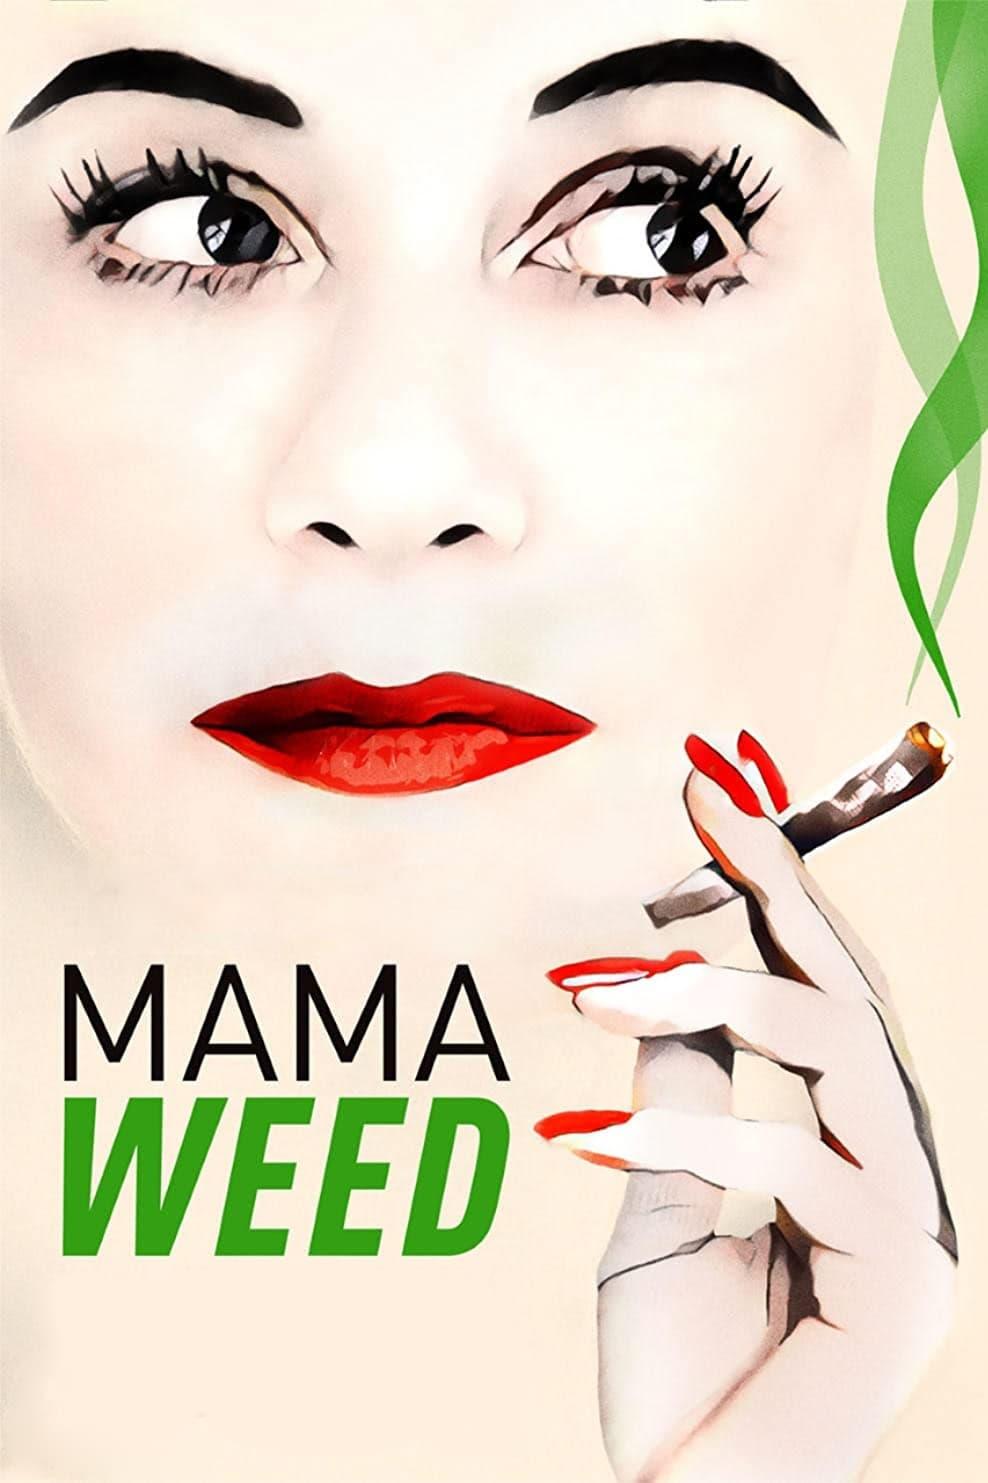 Mama Weed poster